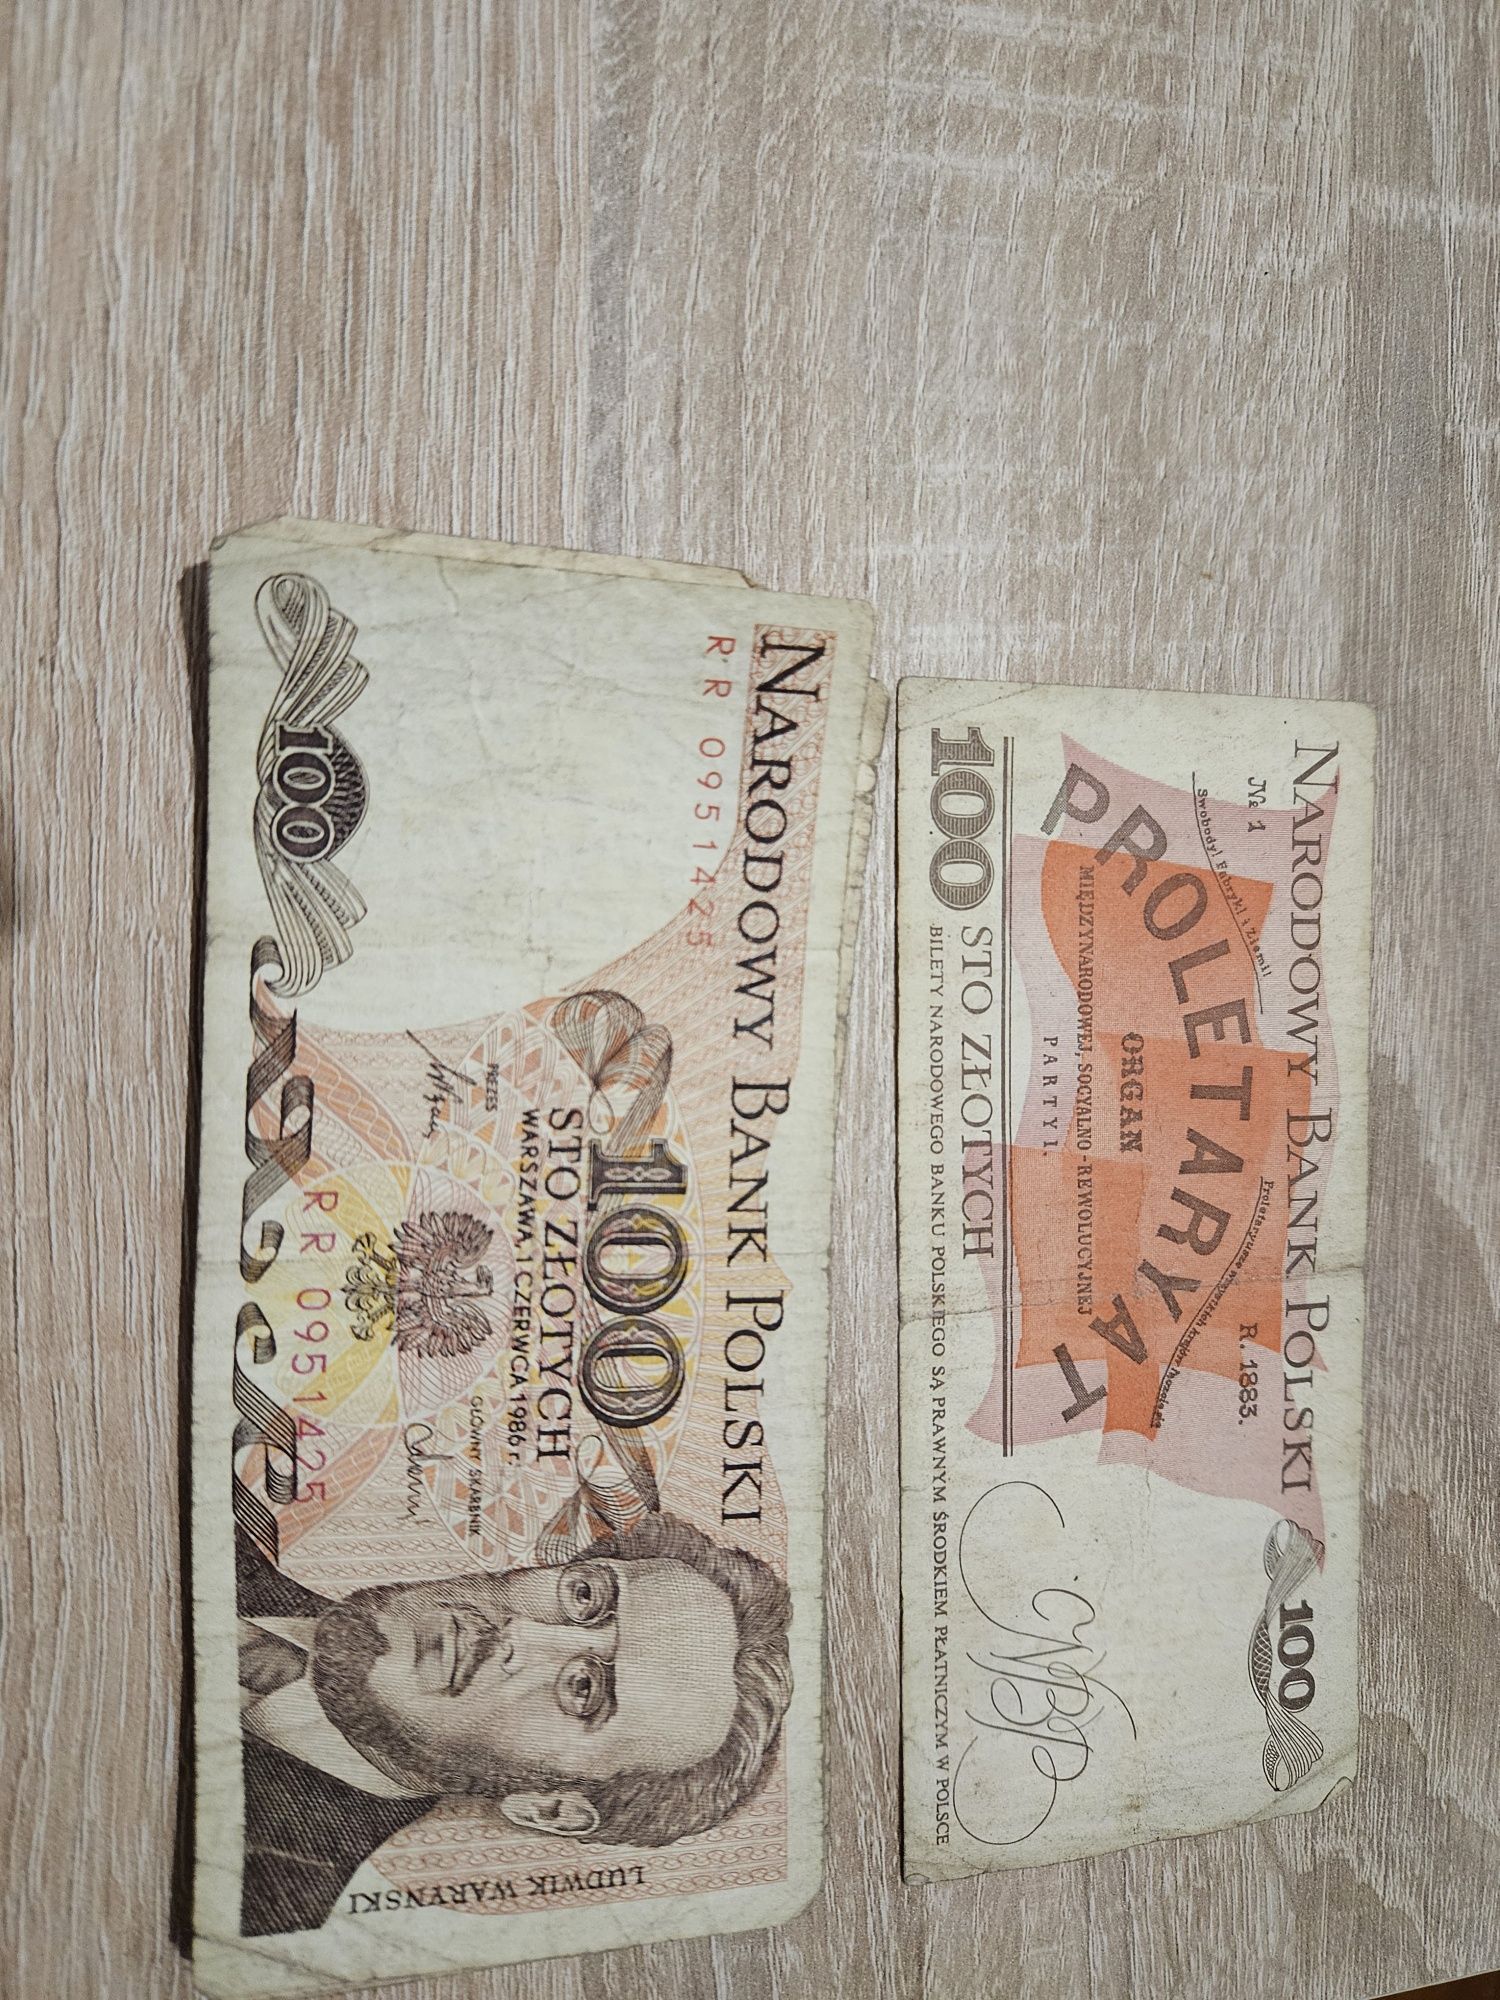 Stare banknoty rok 82, 86, 88. Łącznie 6 100zl